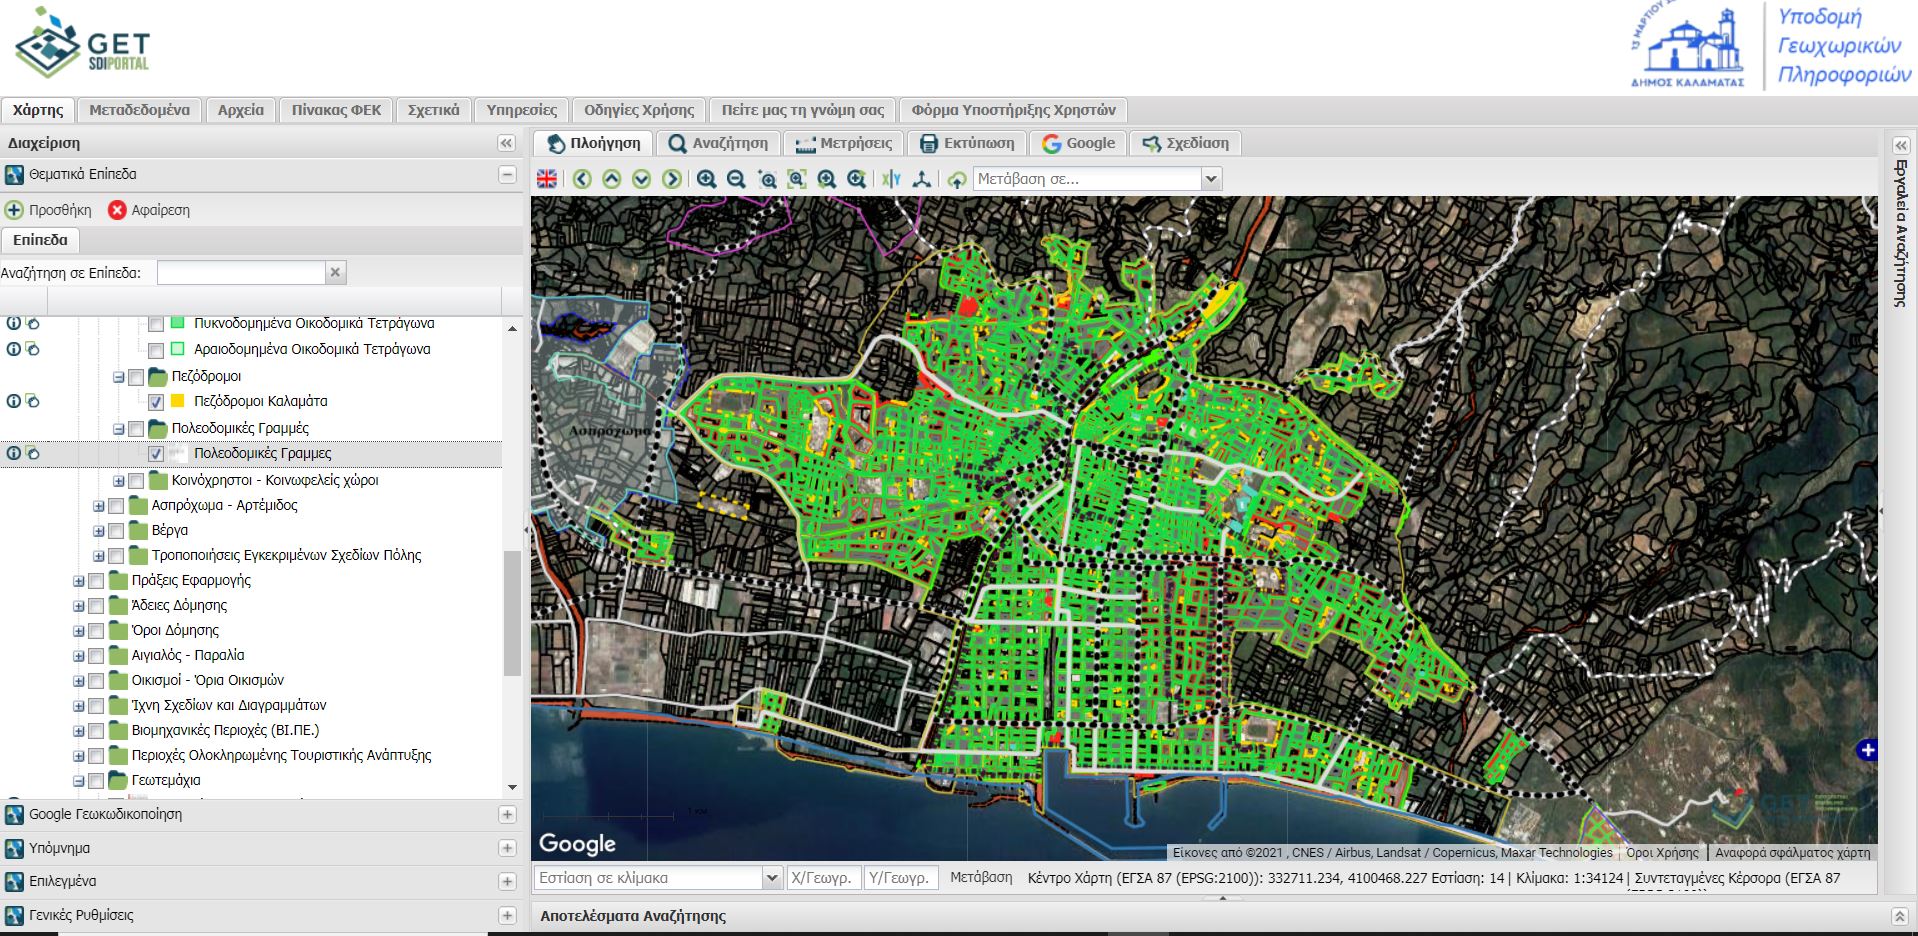 Καλαμάτα: Ανάπτυξη συστήματος GIS για τις υποδομές του Δήμου